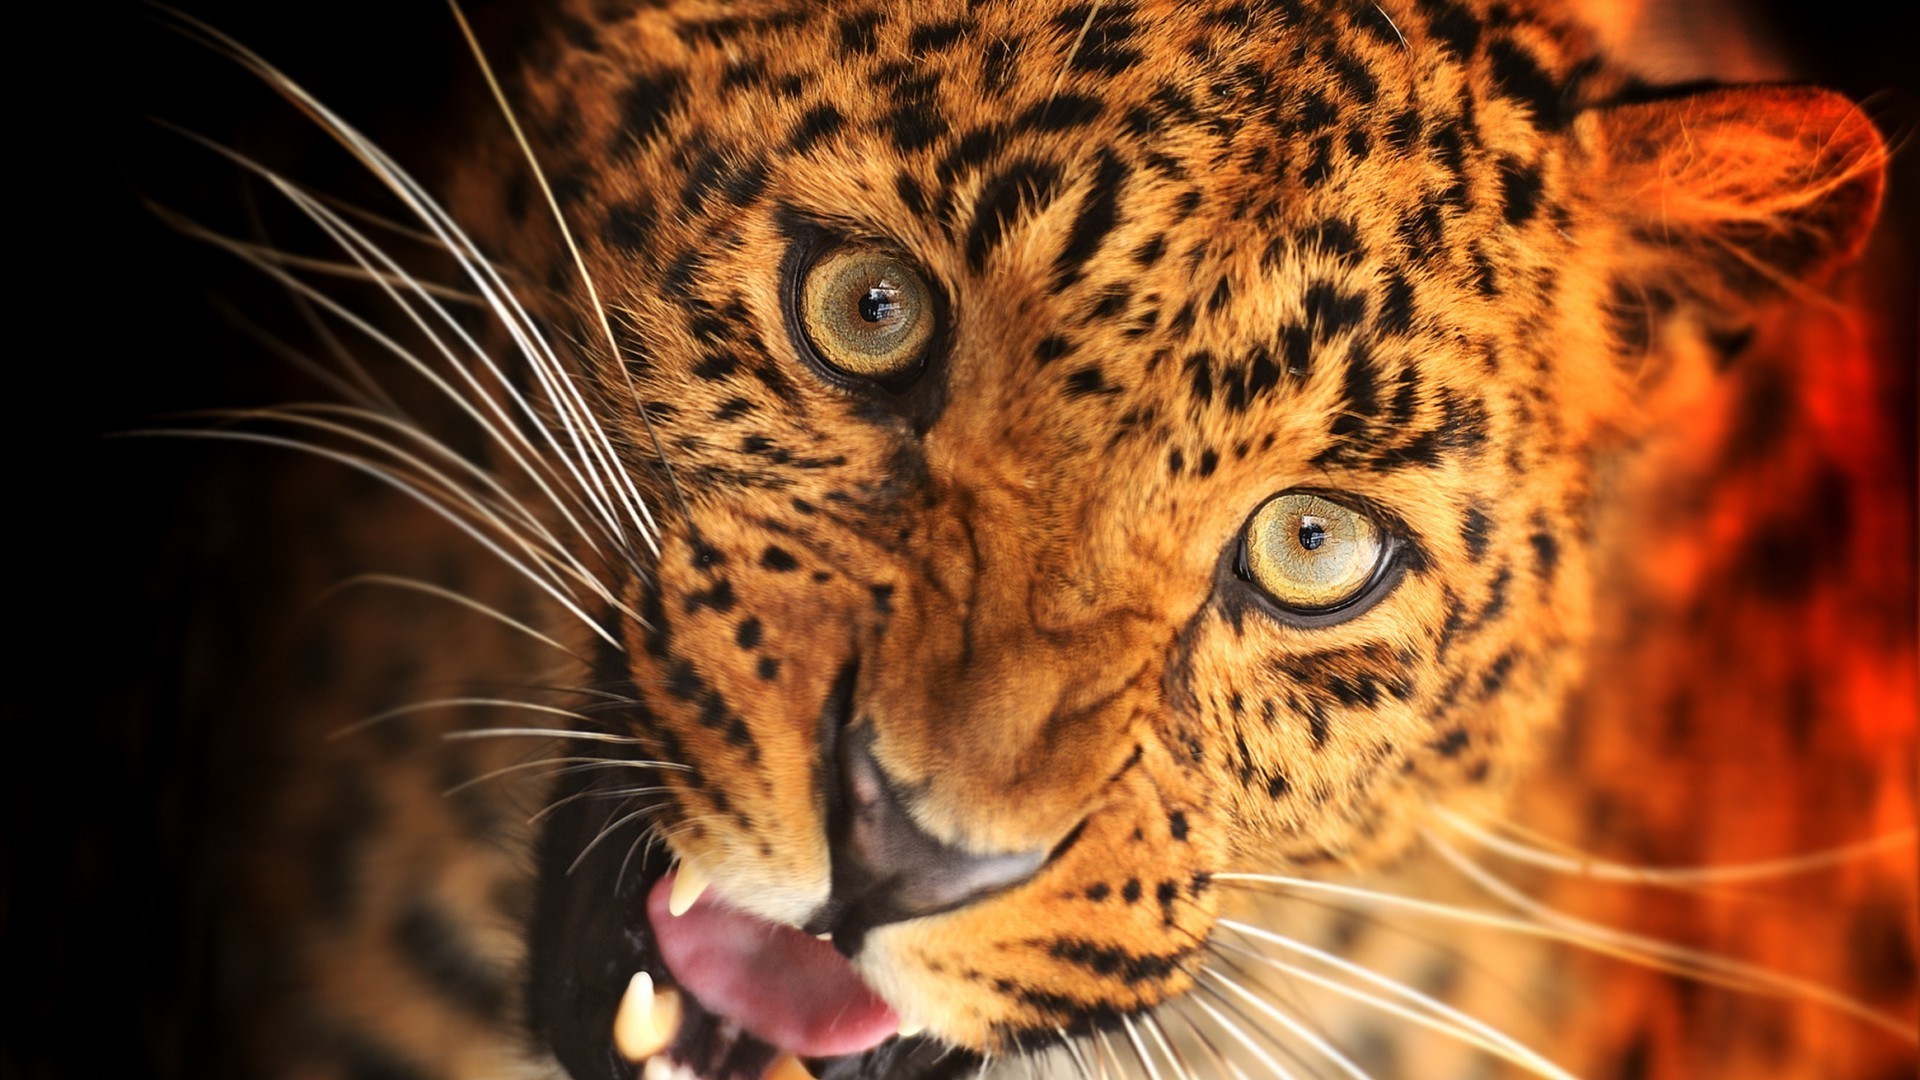 животные кошка млекопитающее дикой природы тигр леопард хищник зоопарк охотник животное мех мясоед сафари опасность пантера глядя портрет глаз большой охота джунгли